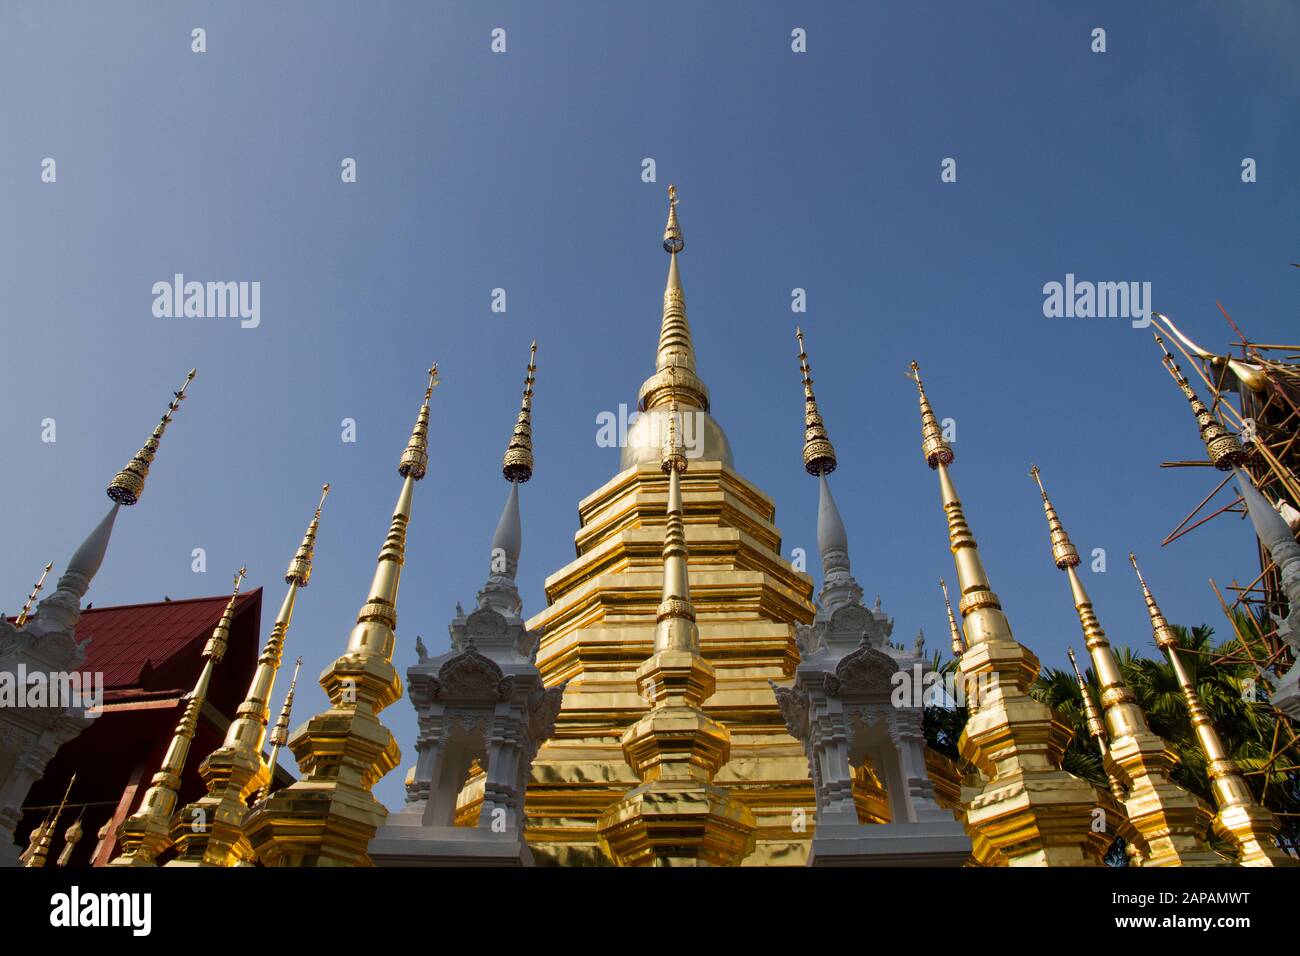 Thailand  temple Wat Muen Lan  temple roof decorations Thailand Chiang Mai,  roof decorations Stock Photo